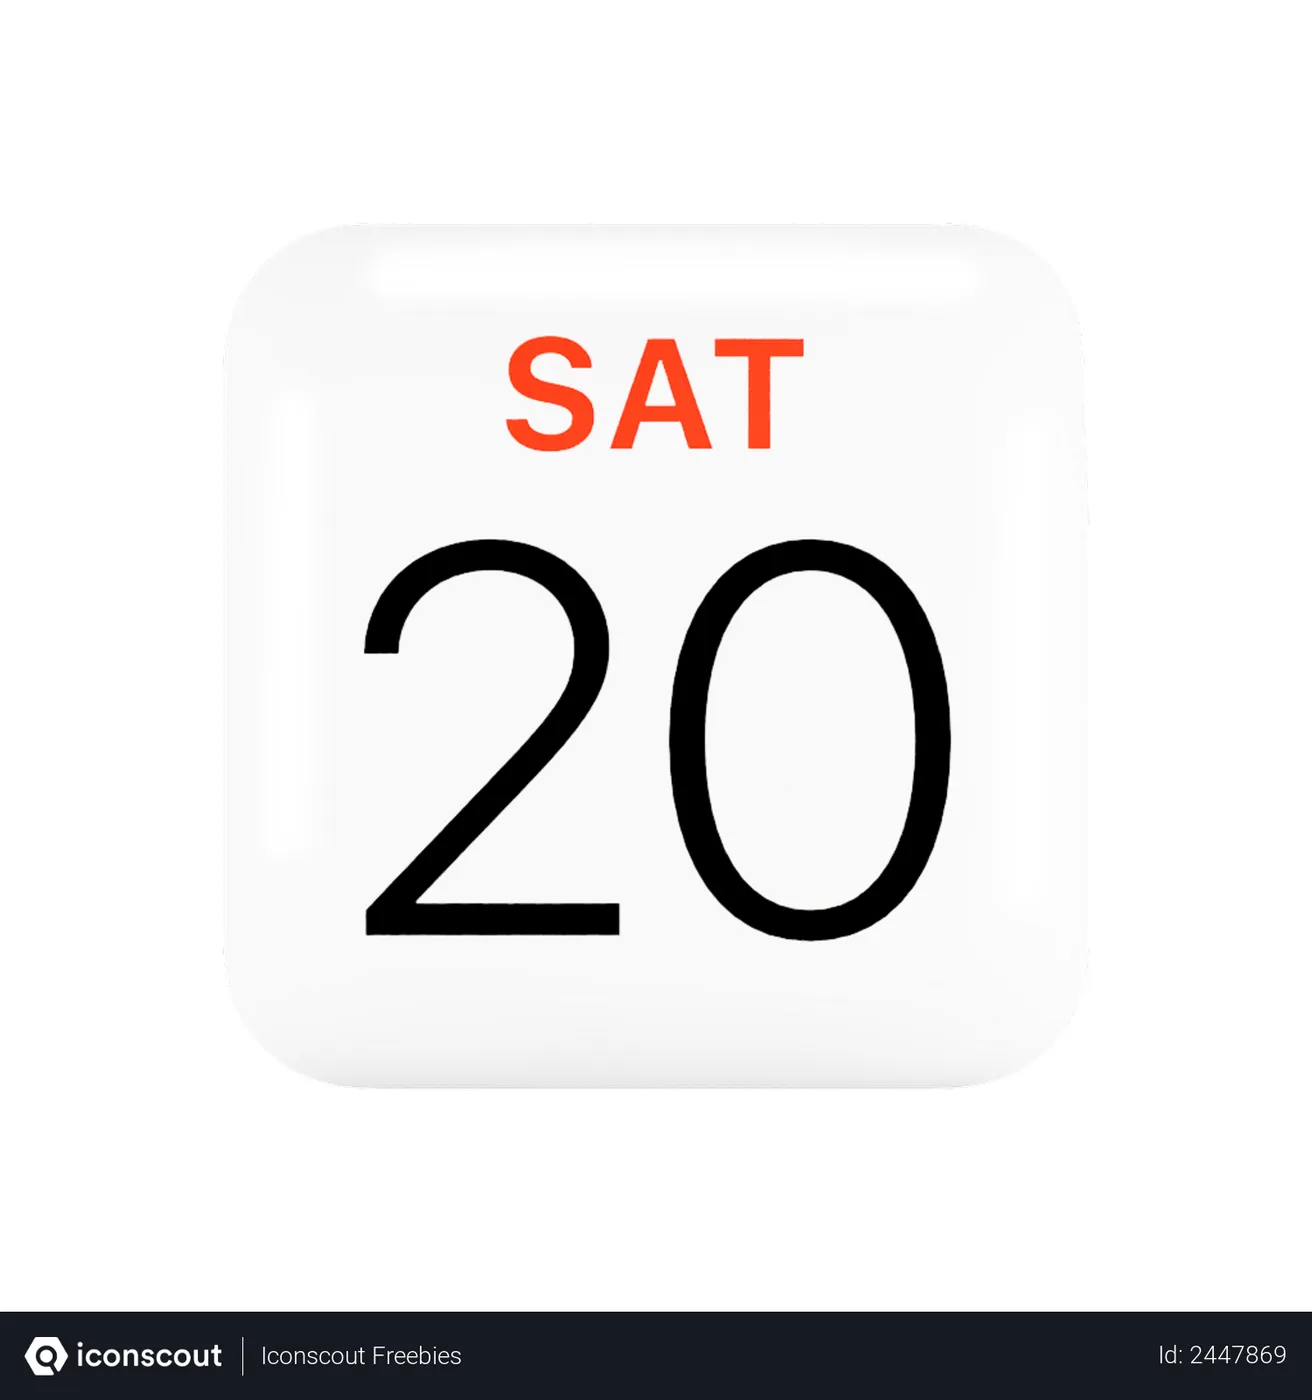 Free Apple Calendar Logo 3D Logo download in PNG, OBJ or Blend format